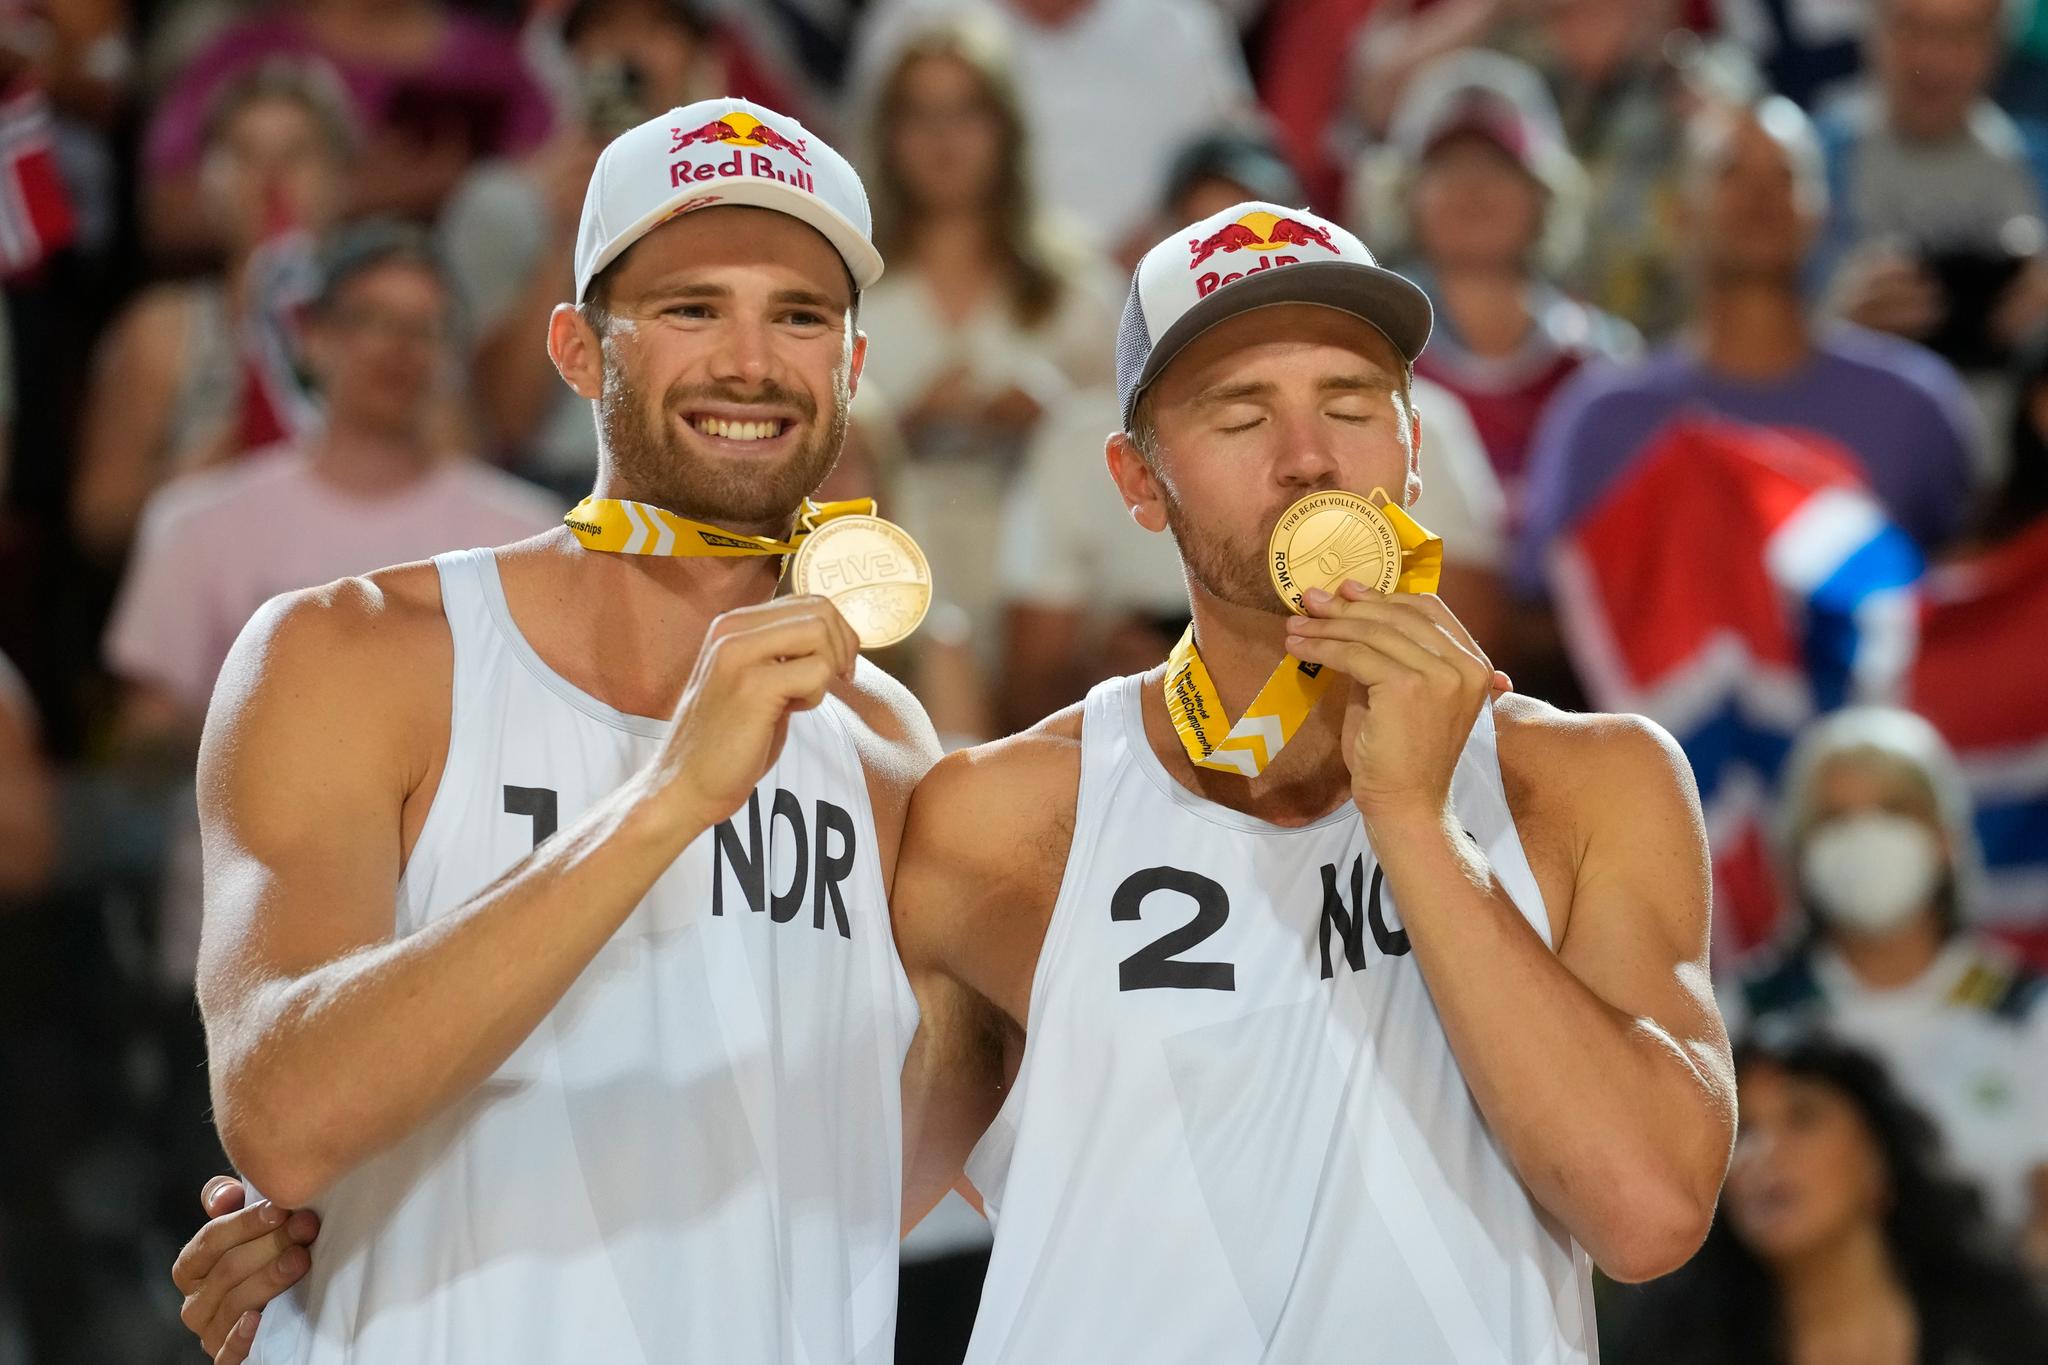 GULLKYSSET: Christian Sørum (høyre) kunne gi gullmedaljen et godt smask etter søndagens finale. 